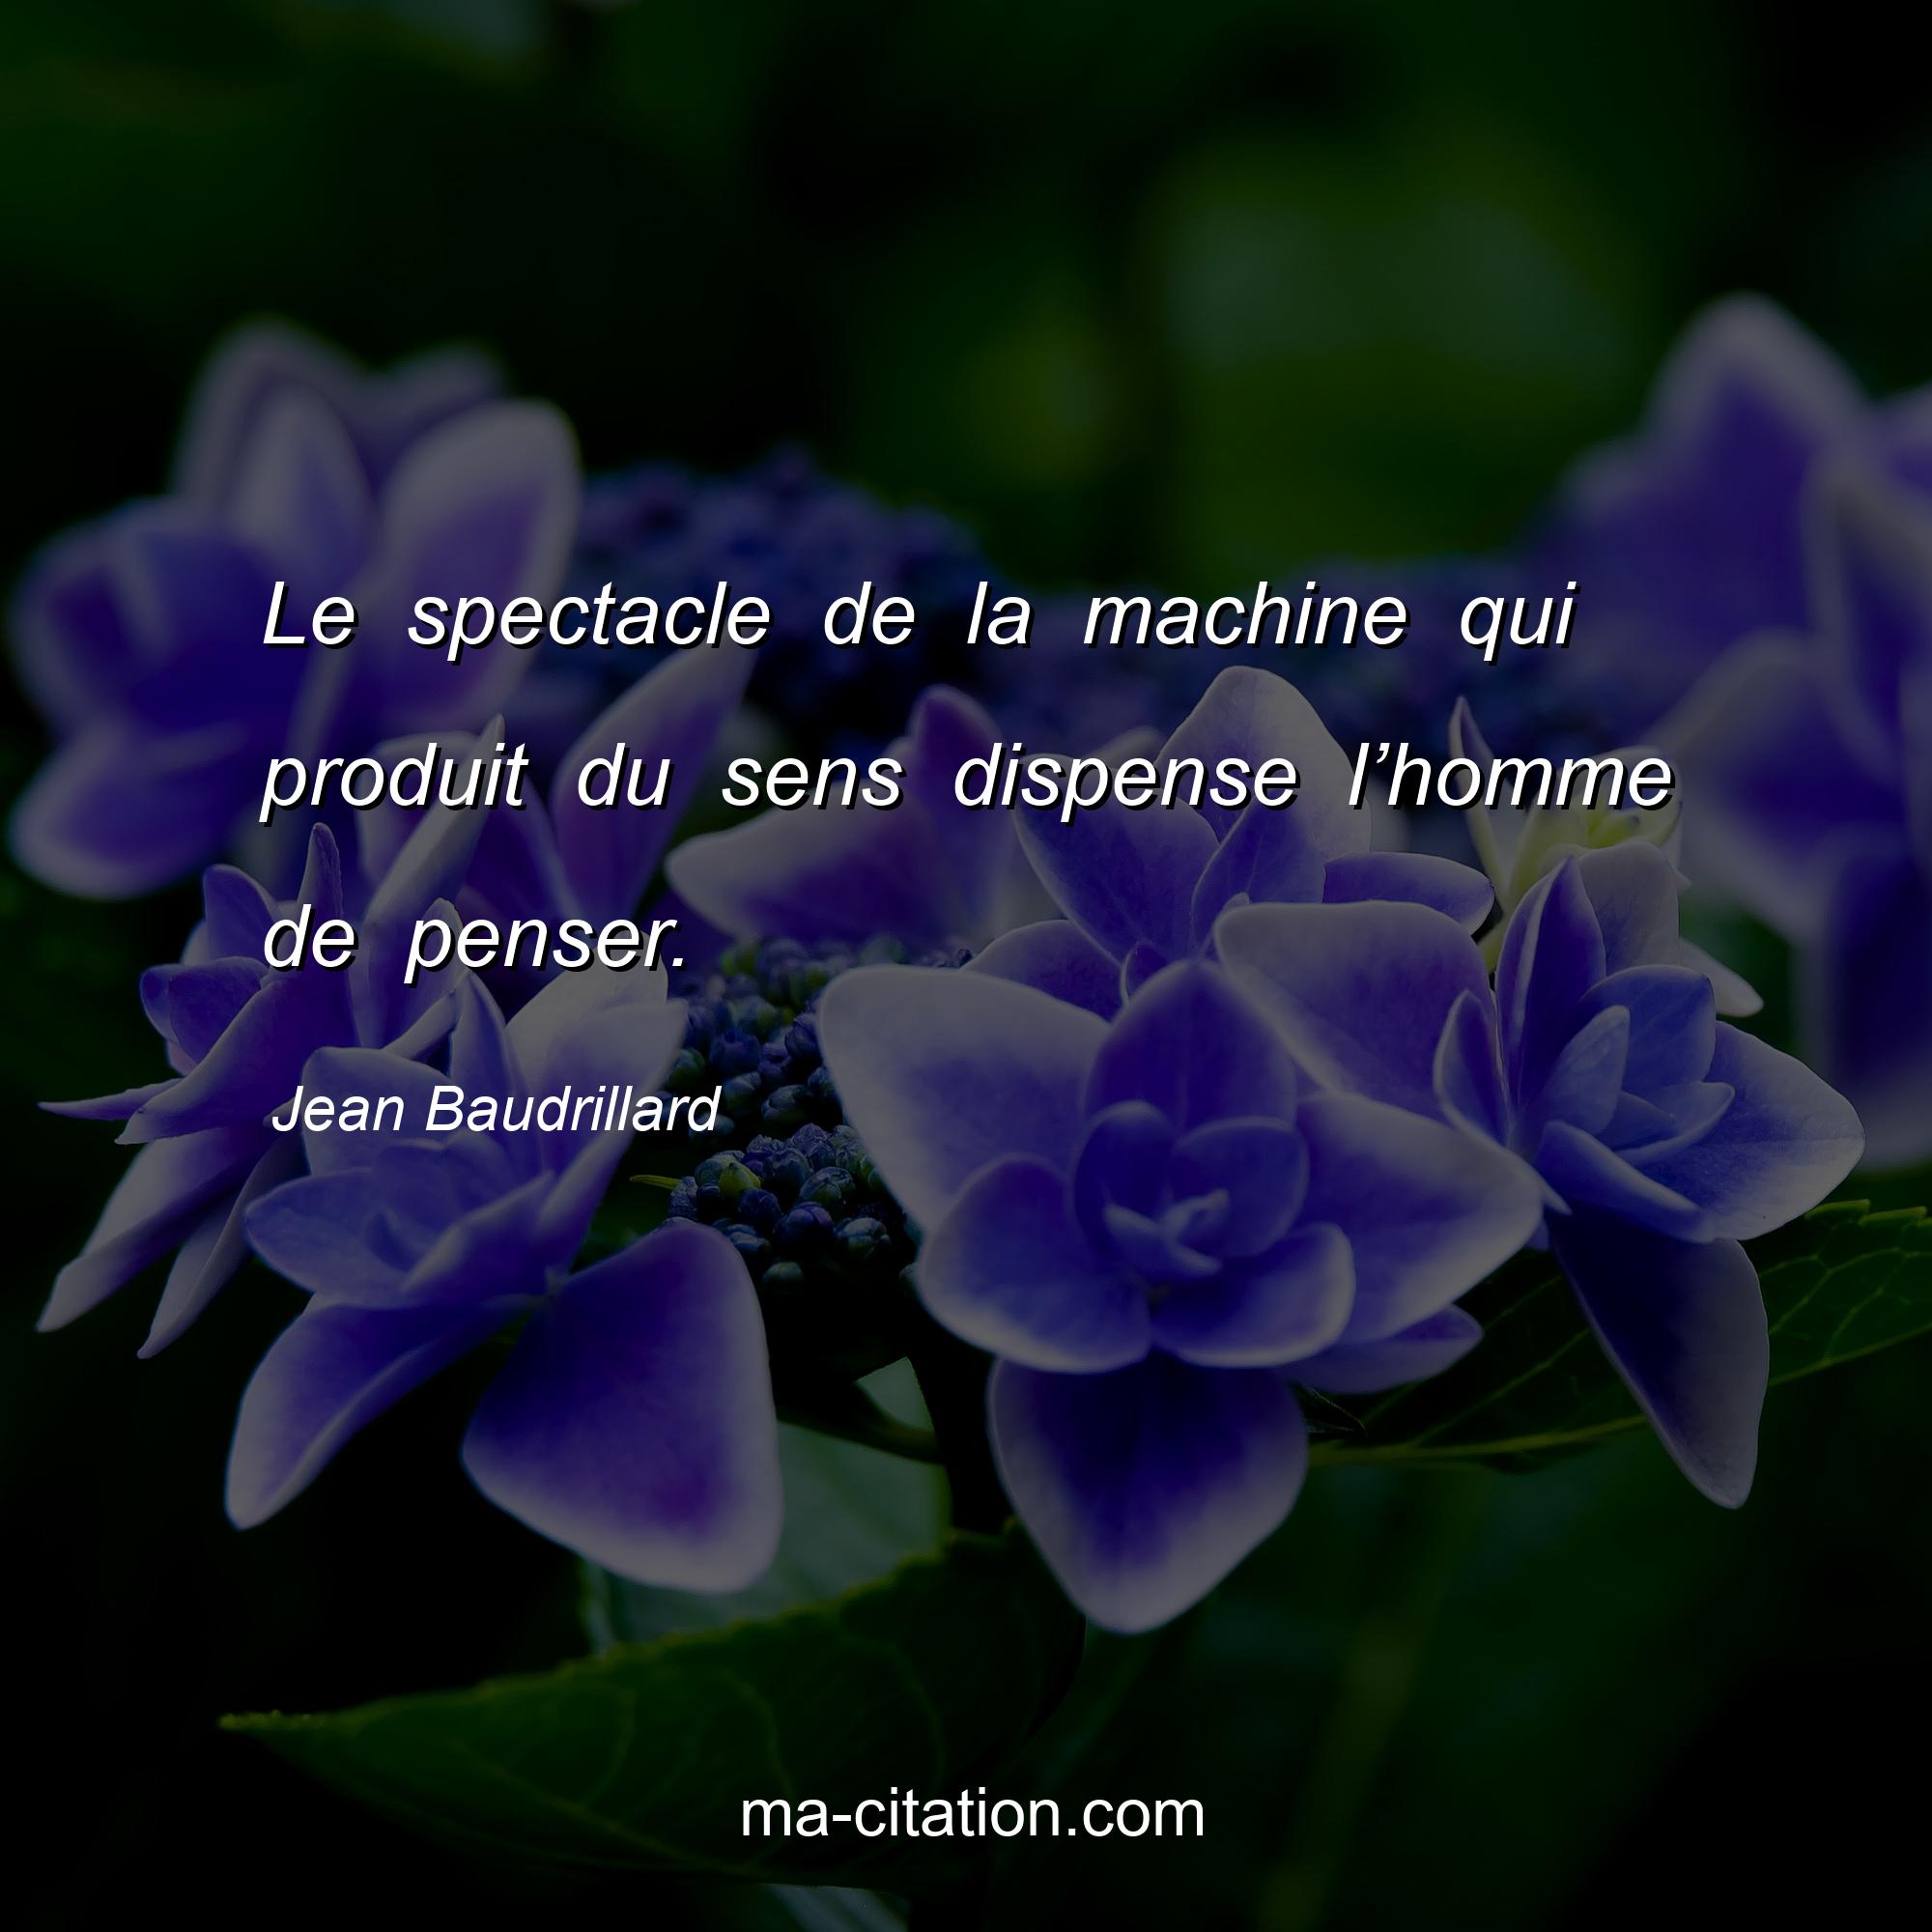 Jean Baudrillard : Le spectacle de la machine qui produit du sens dispense l’homme de penser.